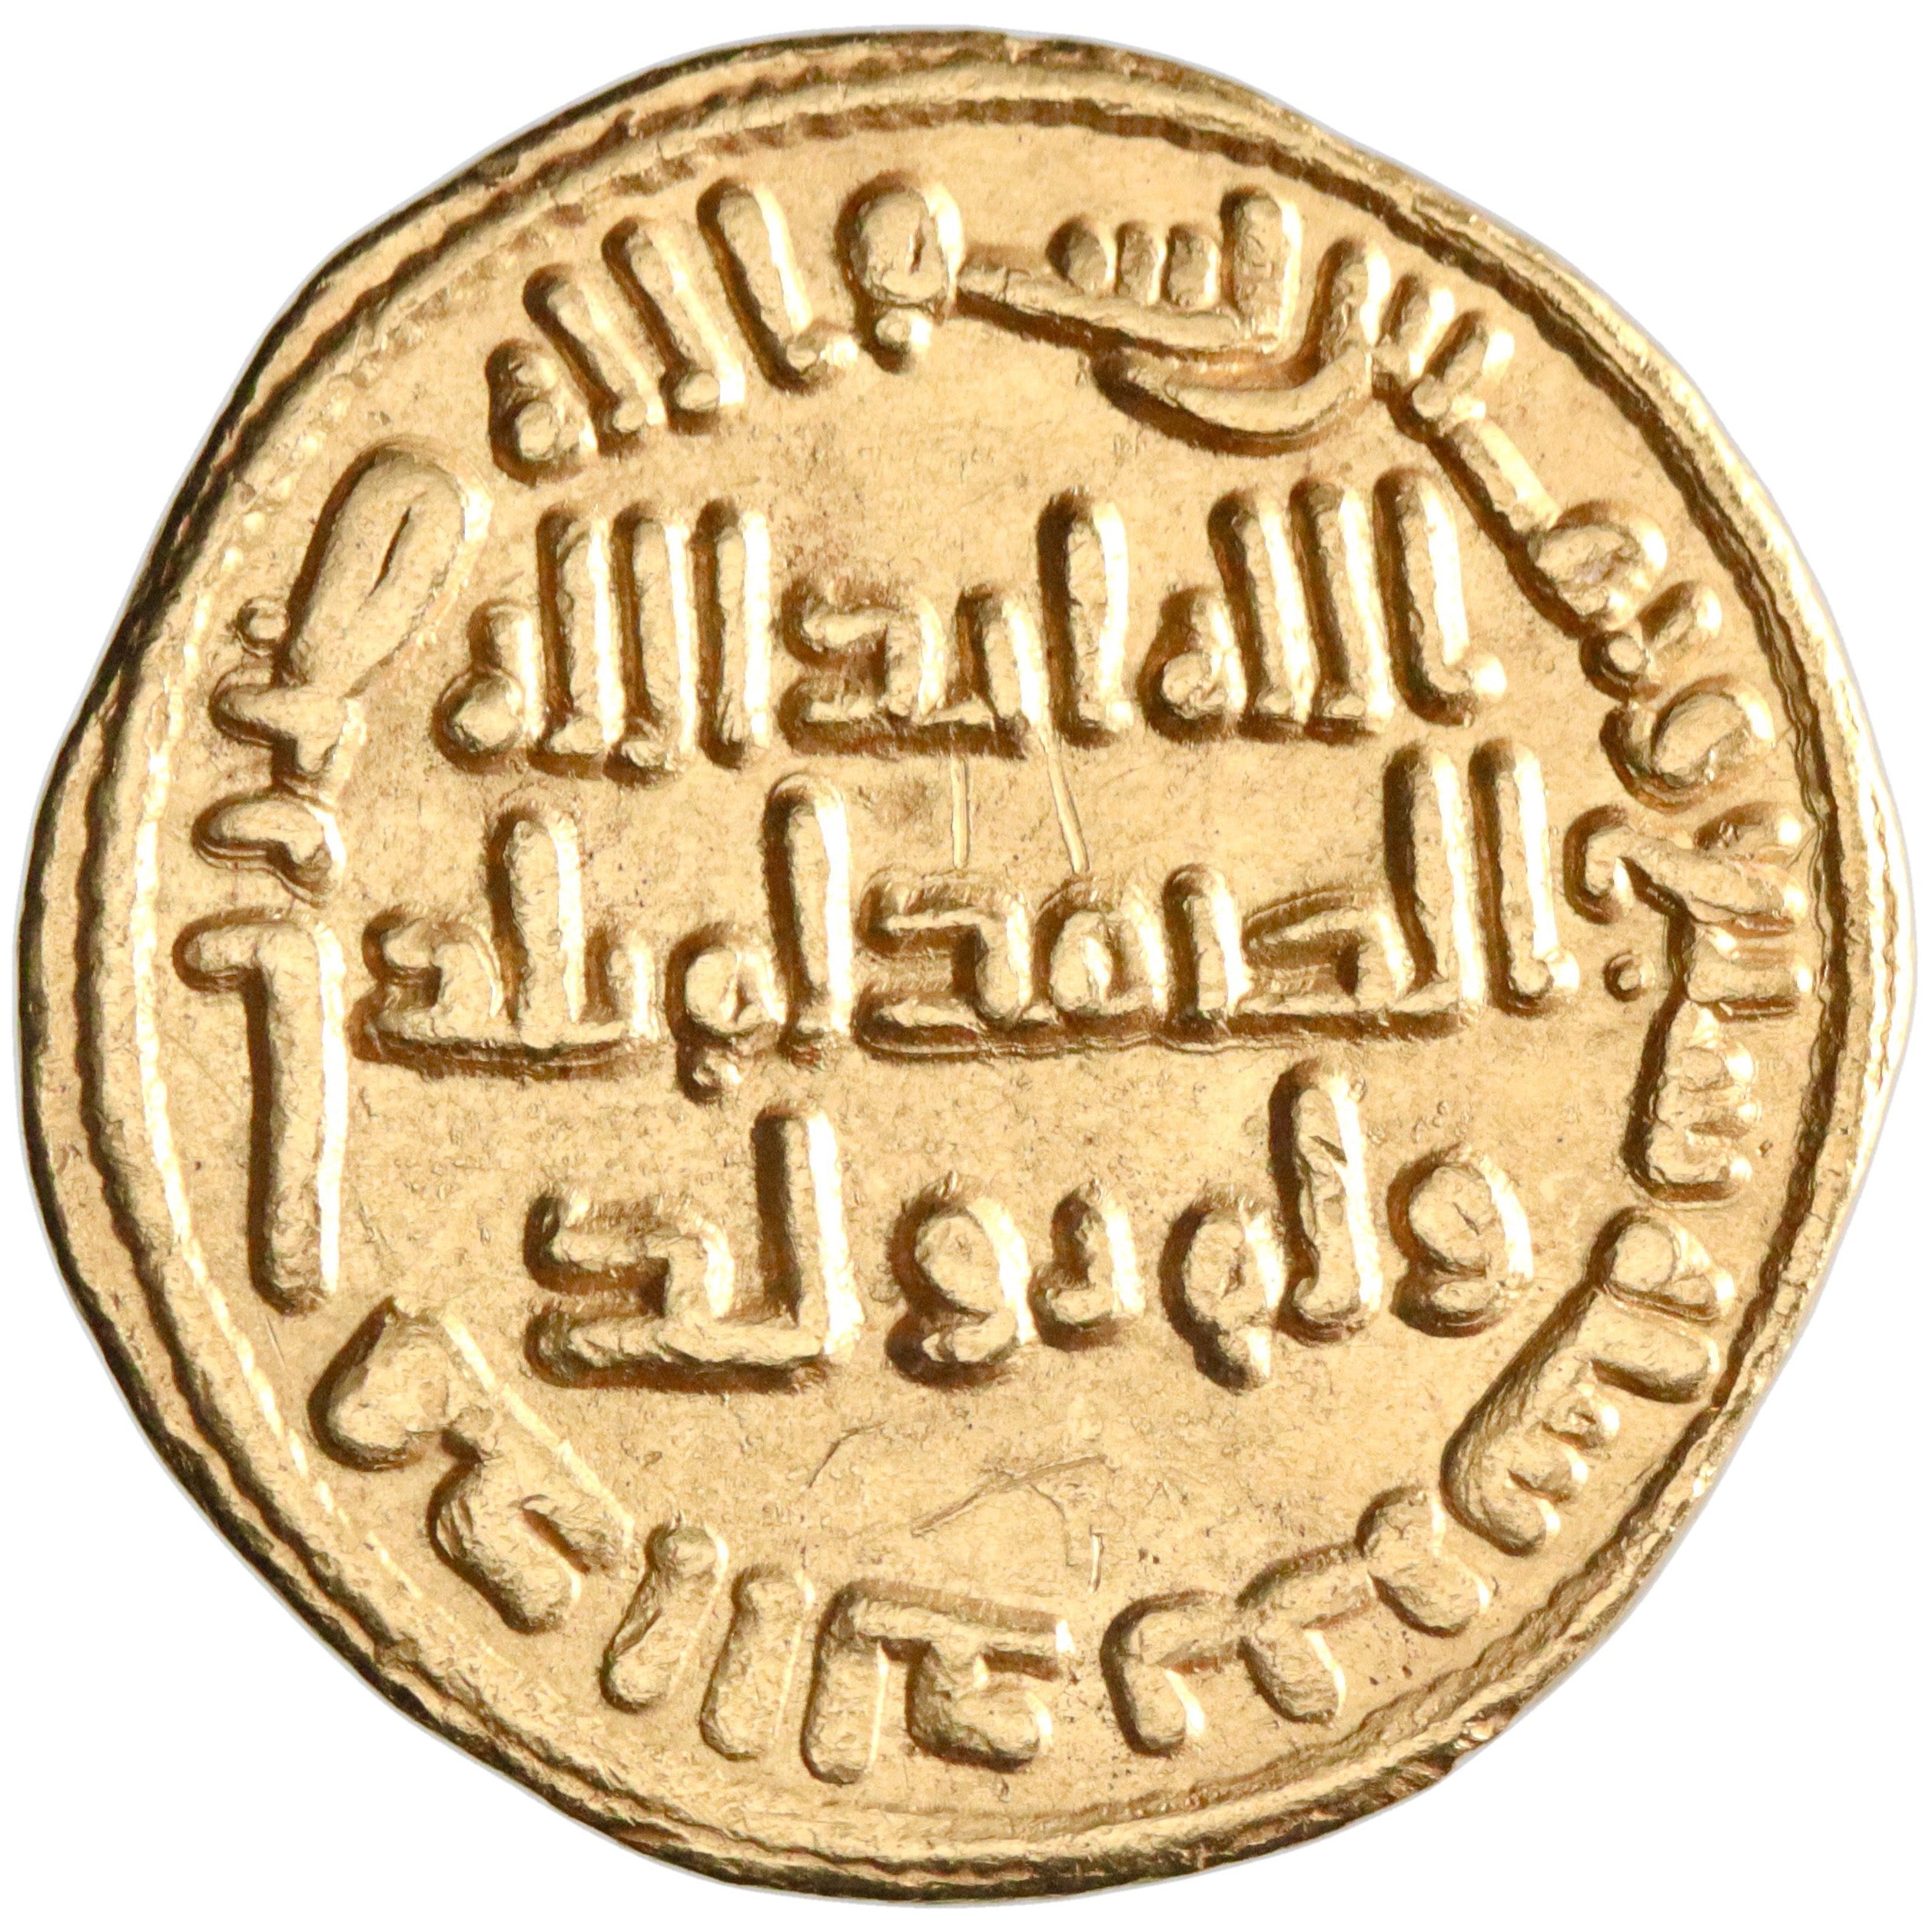 Umayyad, al-Walid I ibn 'Abd al-Malik, gold dinar, AH 87